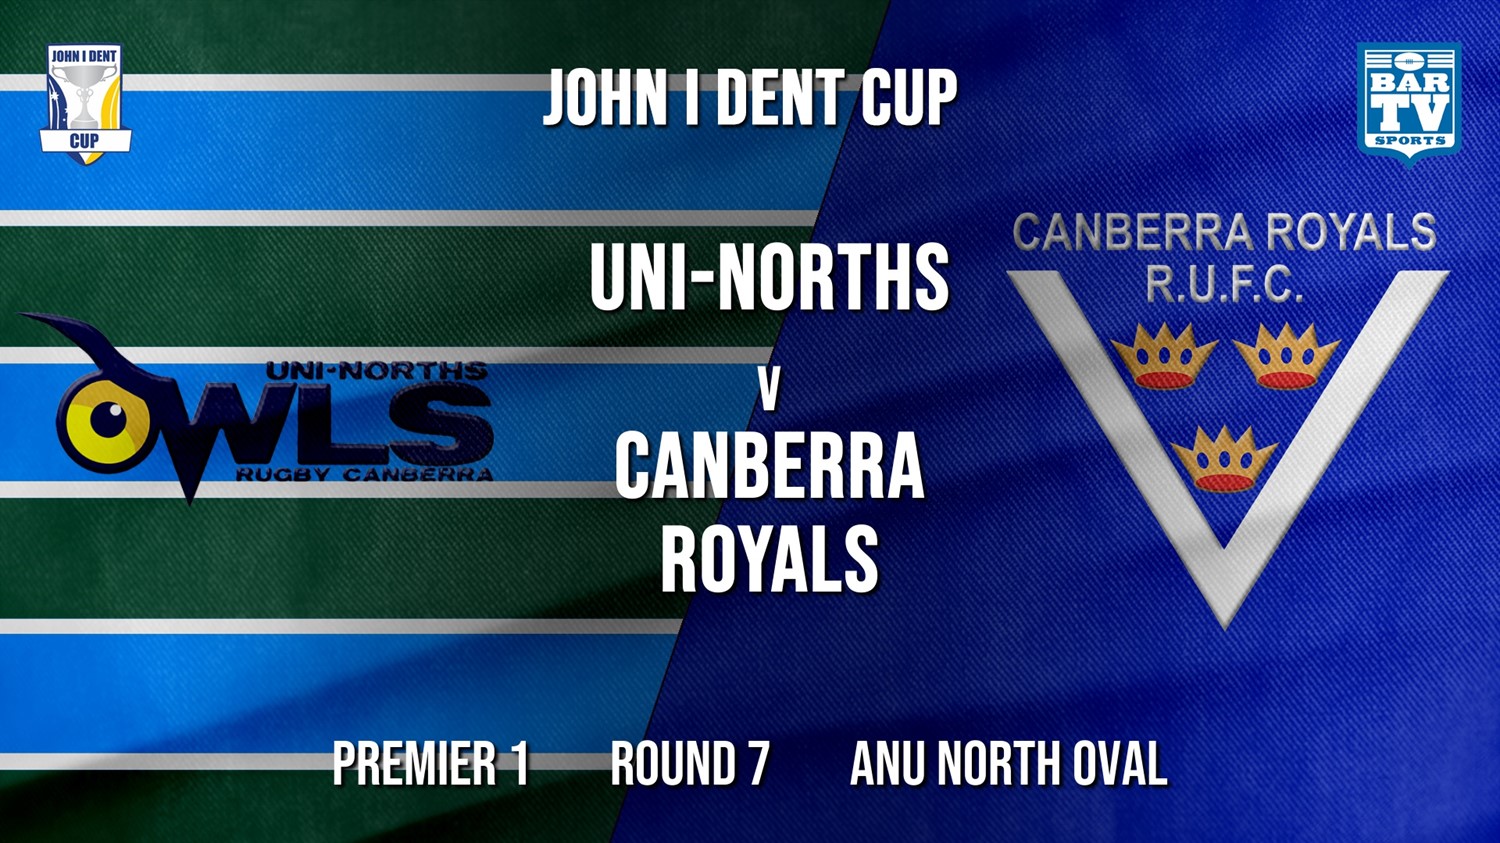 John I Dent Round 7 - Premier 1 - UNI-Norths v Canberra Royals Minigame Slate Image